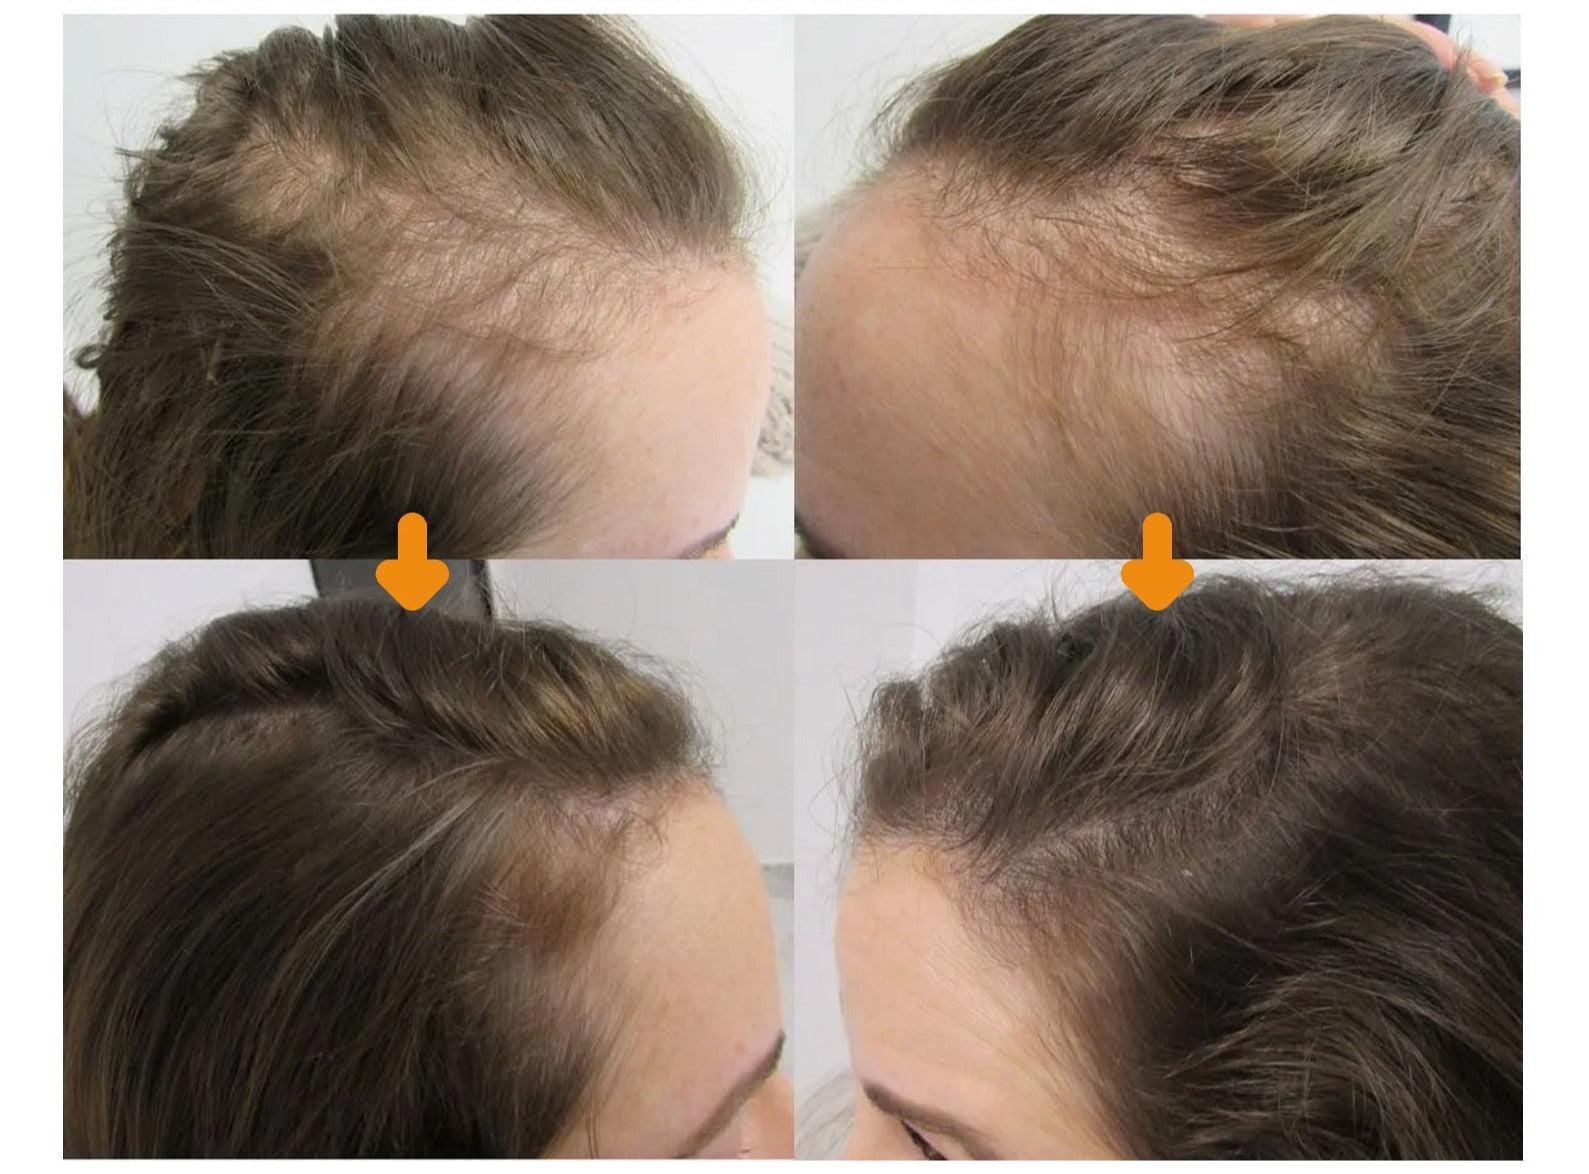 Biopurc ™ hair growth oil (1+1 free)